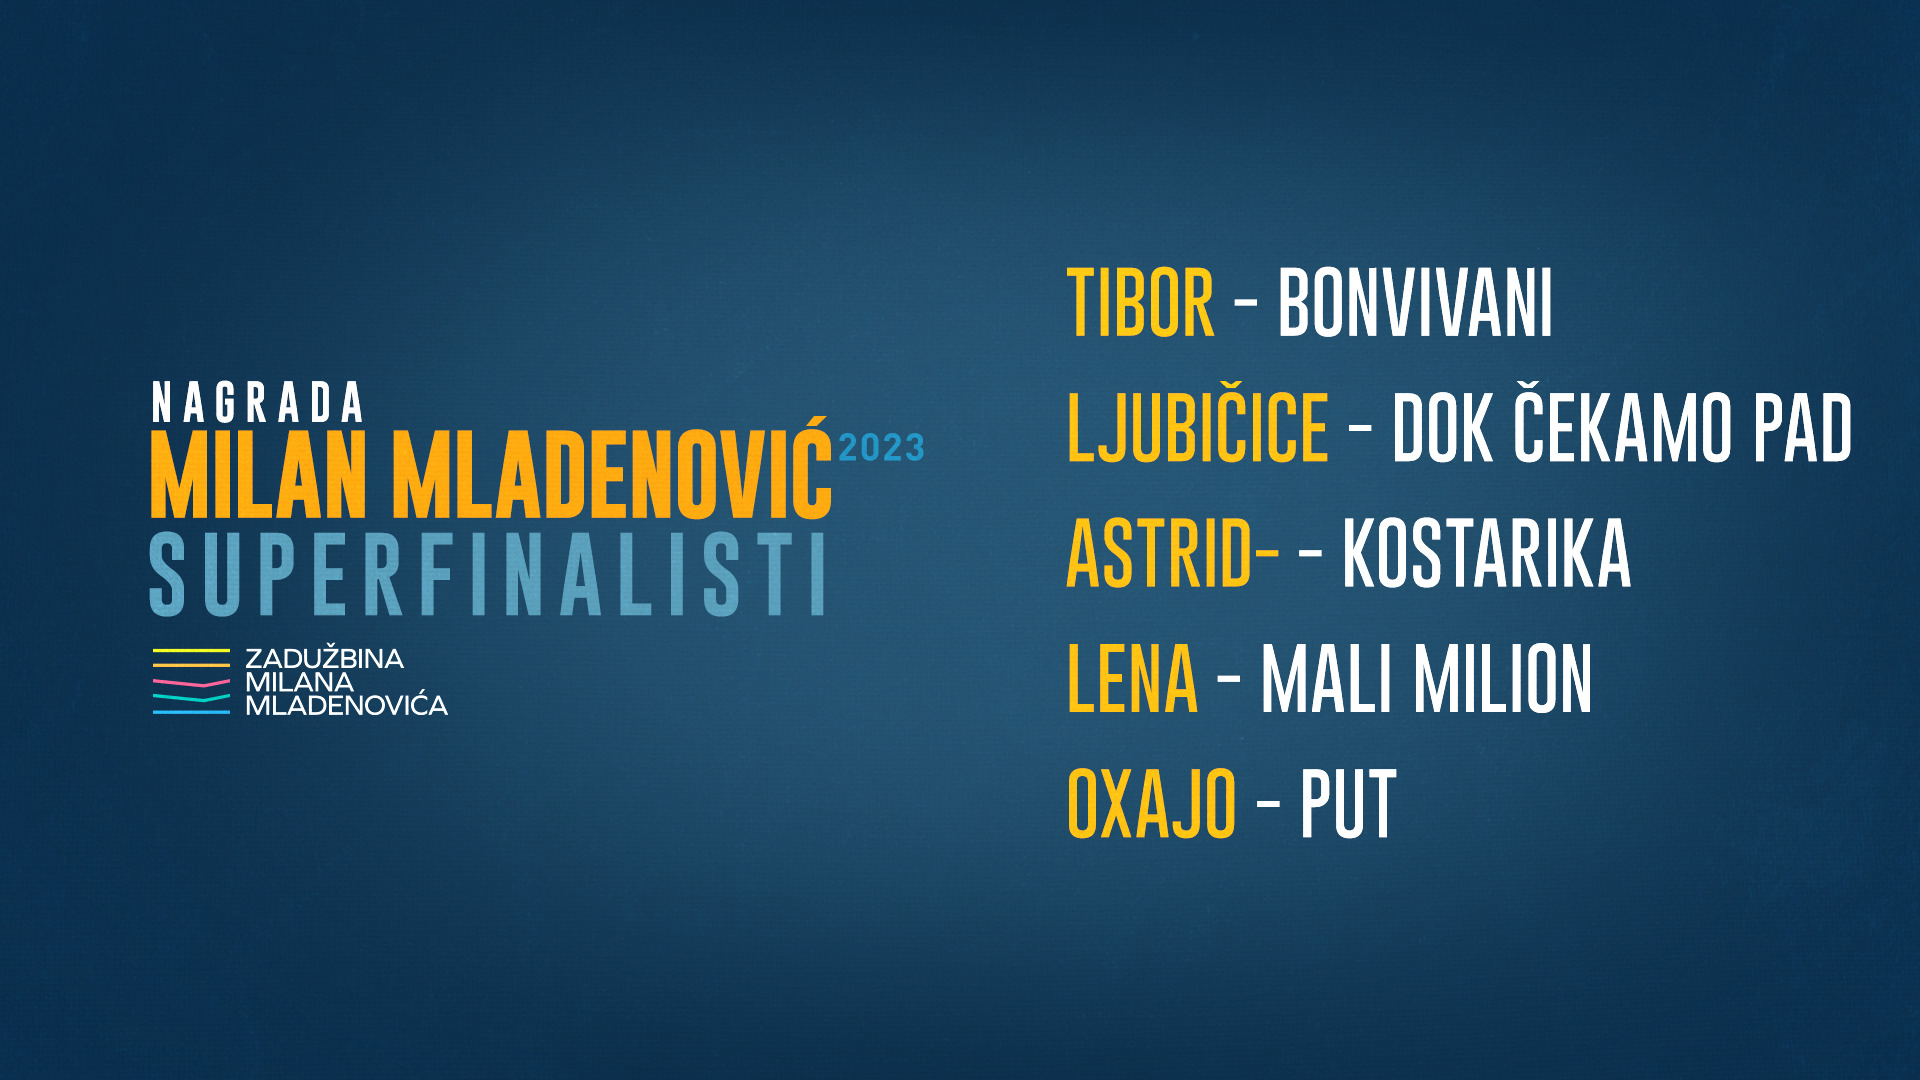 Nagrada Milan Mladenović 2023 biće dodeljena u Makarskoj u okviru festivala ,,Modro i zeleno” 2